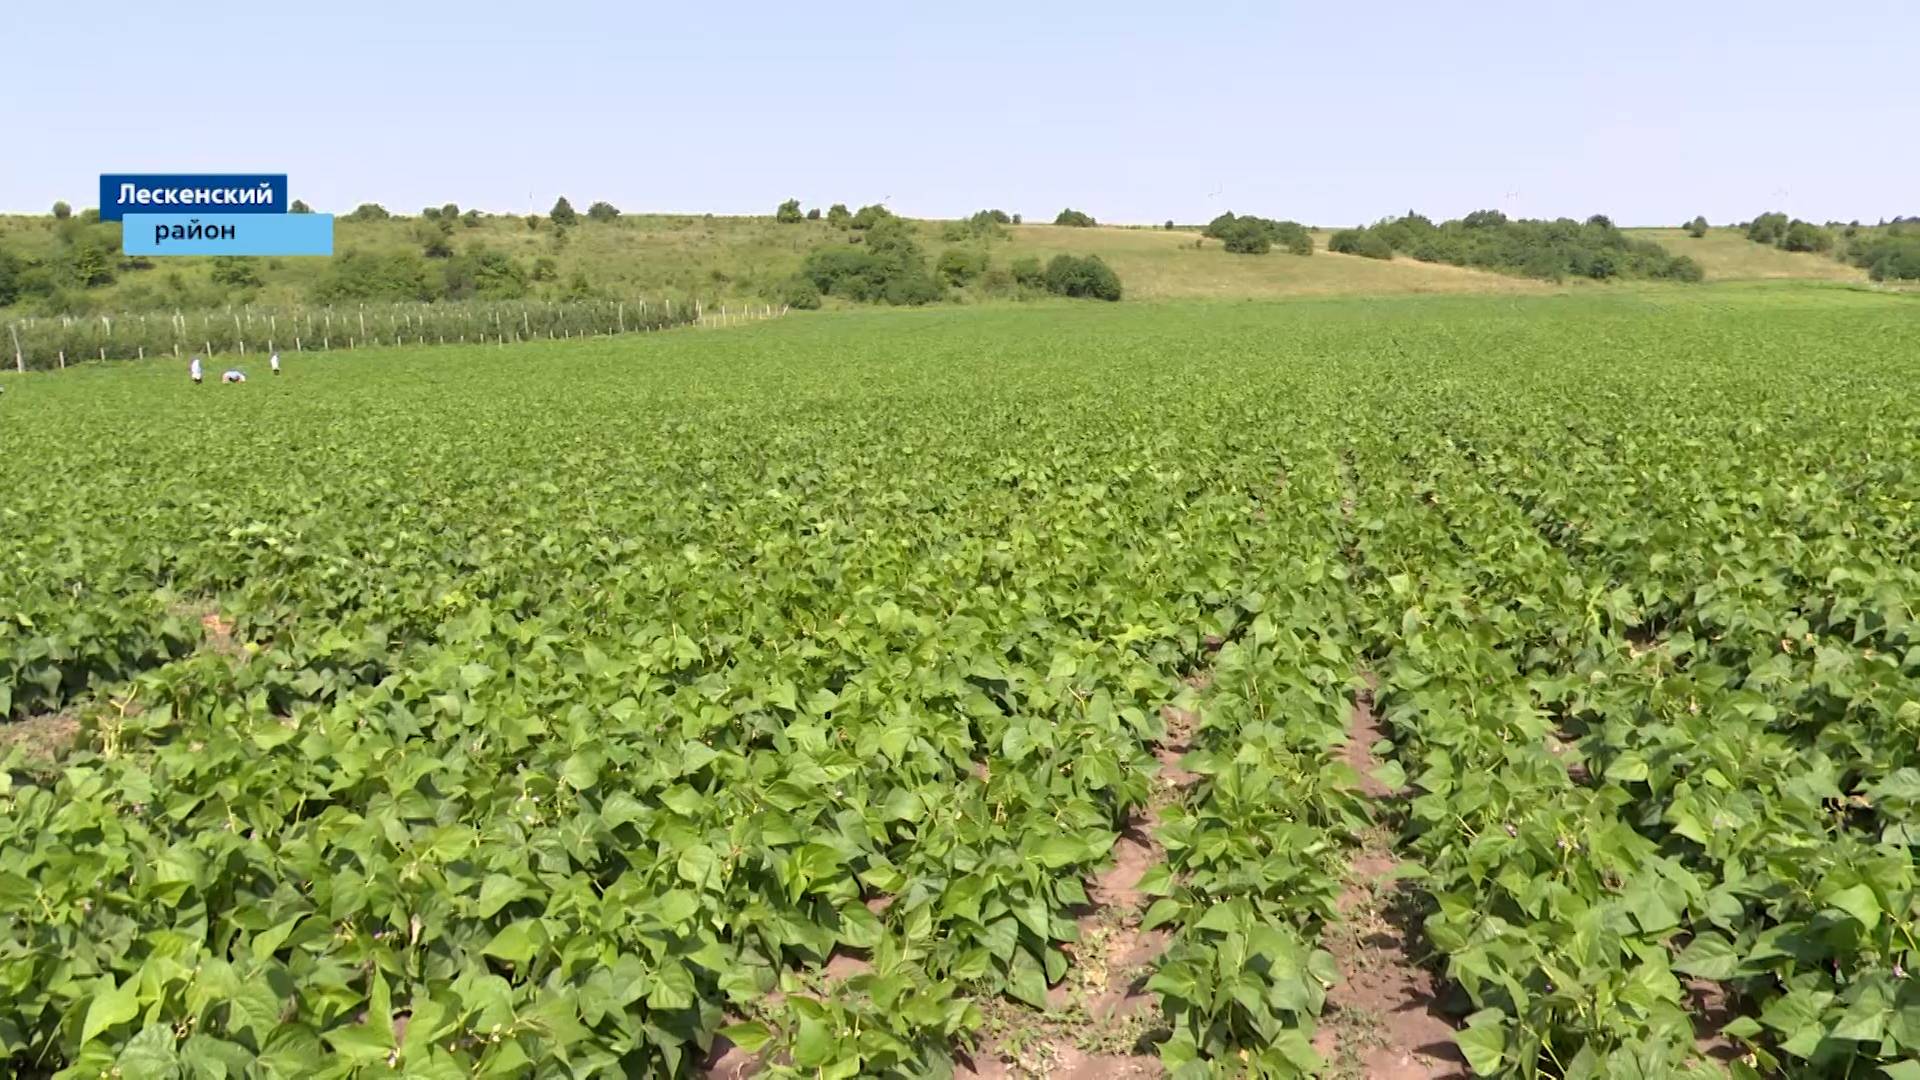 Сельскохозяйственные угодья Лескенского района в этом году радуют богатым урожаем